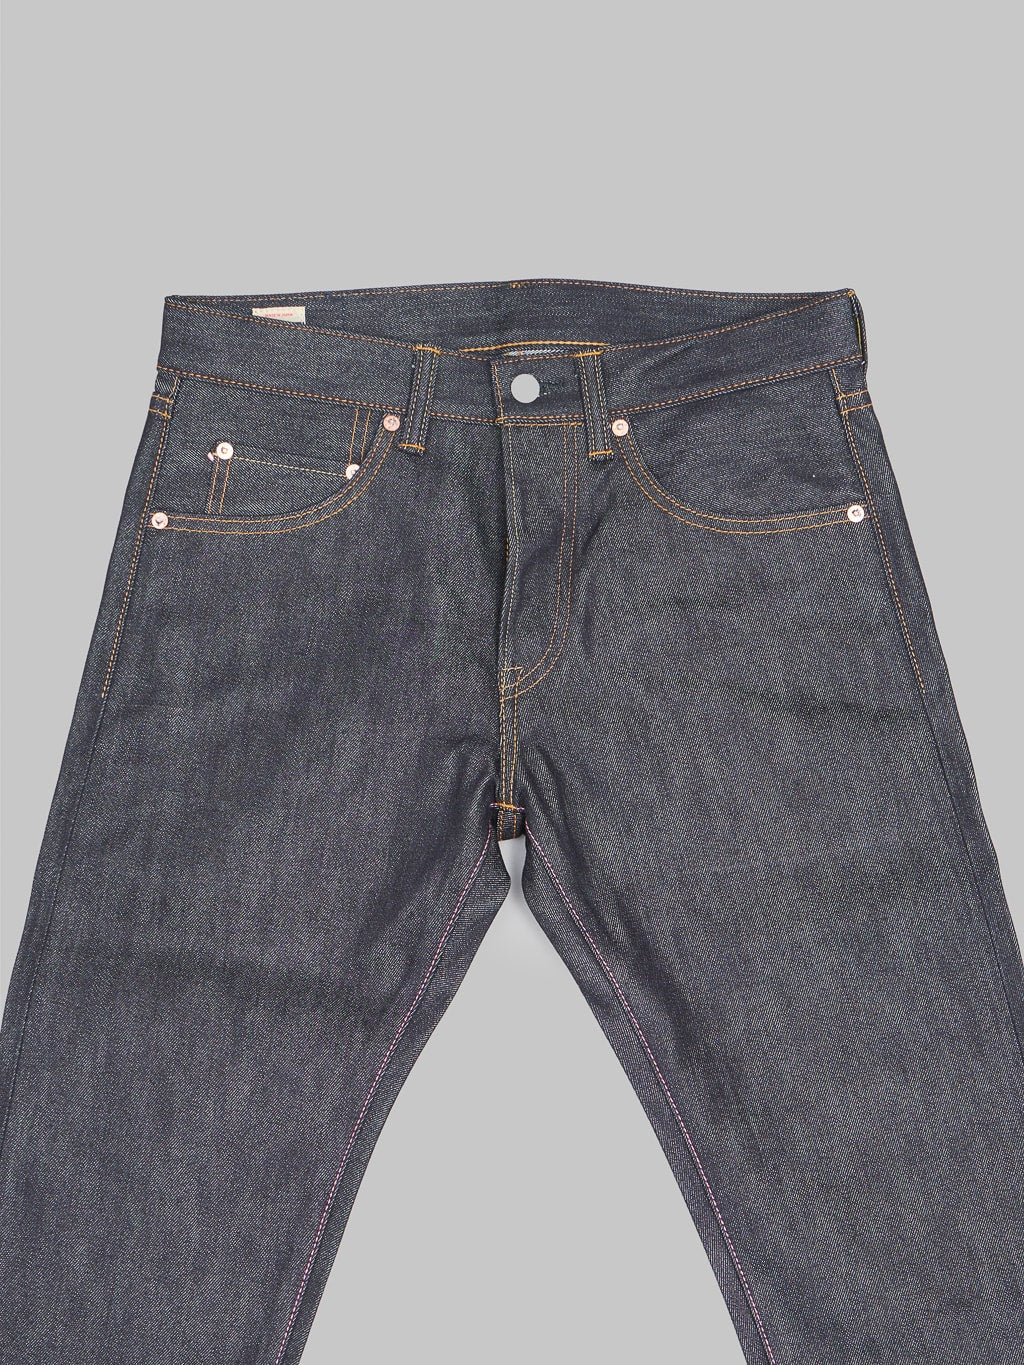 Momotaro 0605SILK Denim Natural Tapered Jeans waist